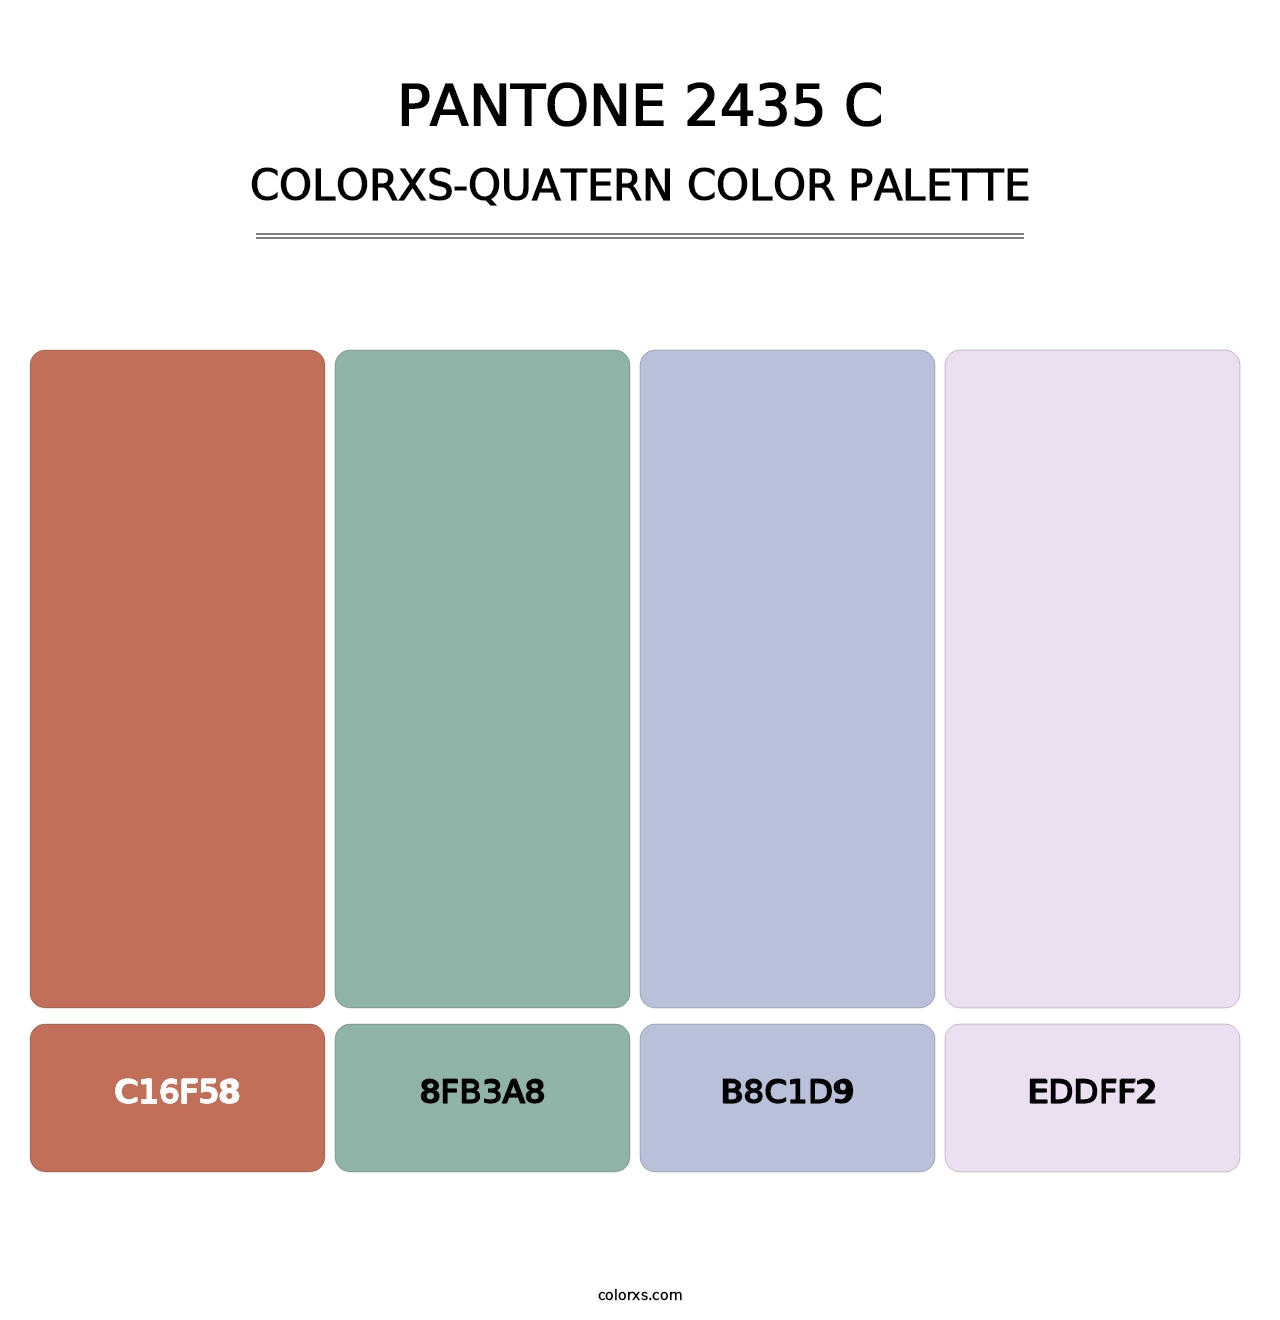 PANTONE 2435 C - Colorxs Quatern Palette